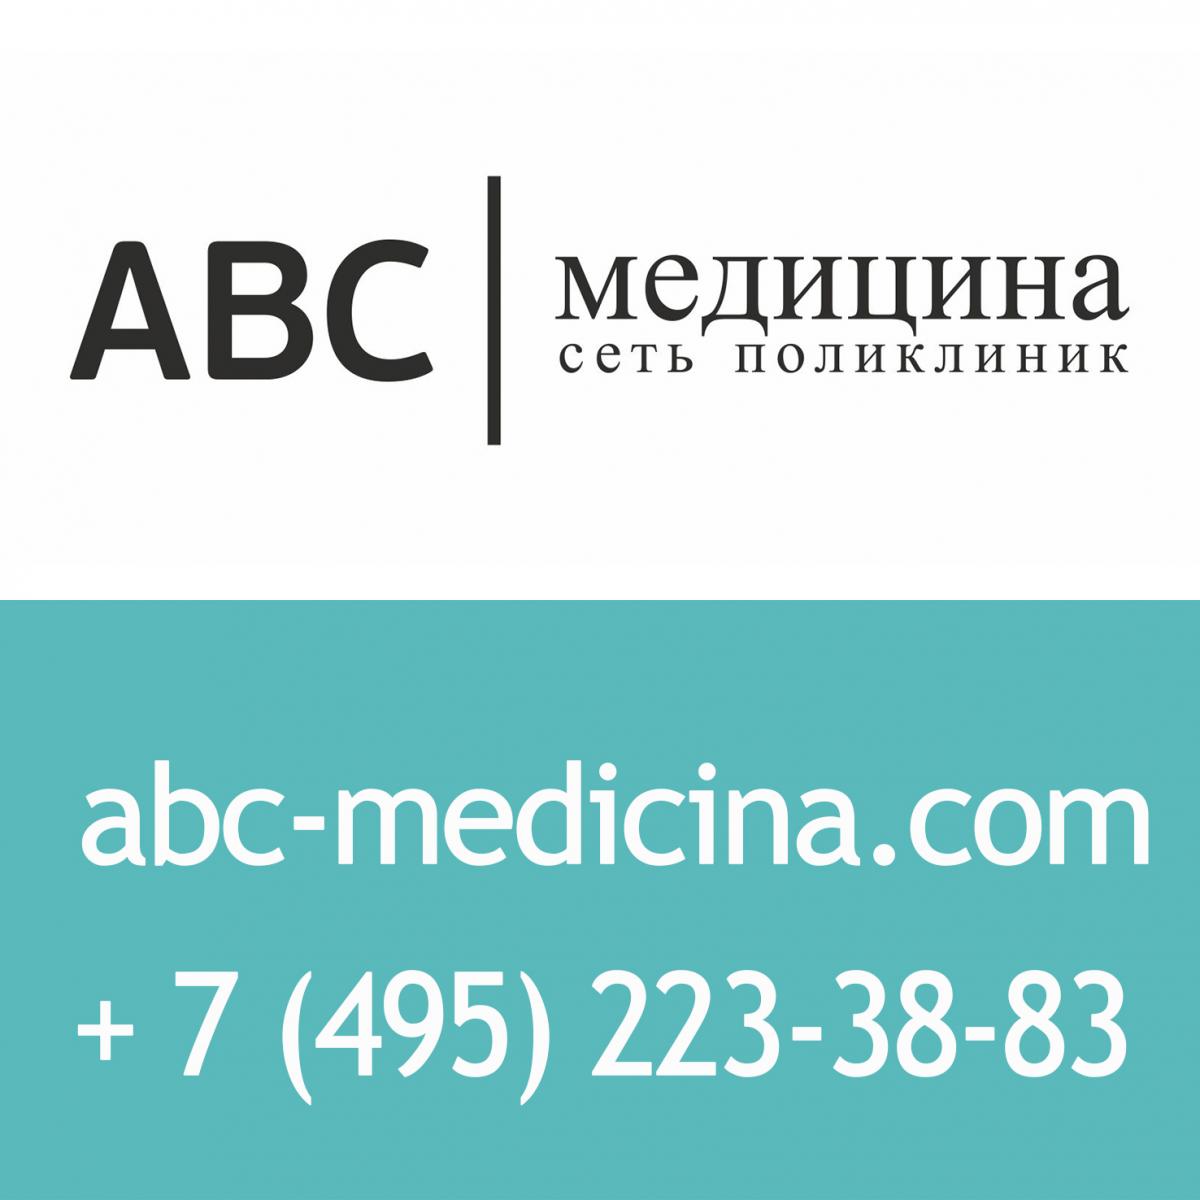 ABC медицина. Сеть поликлиник